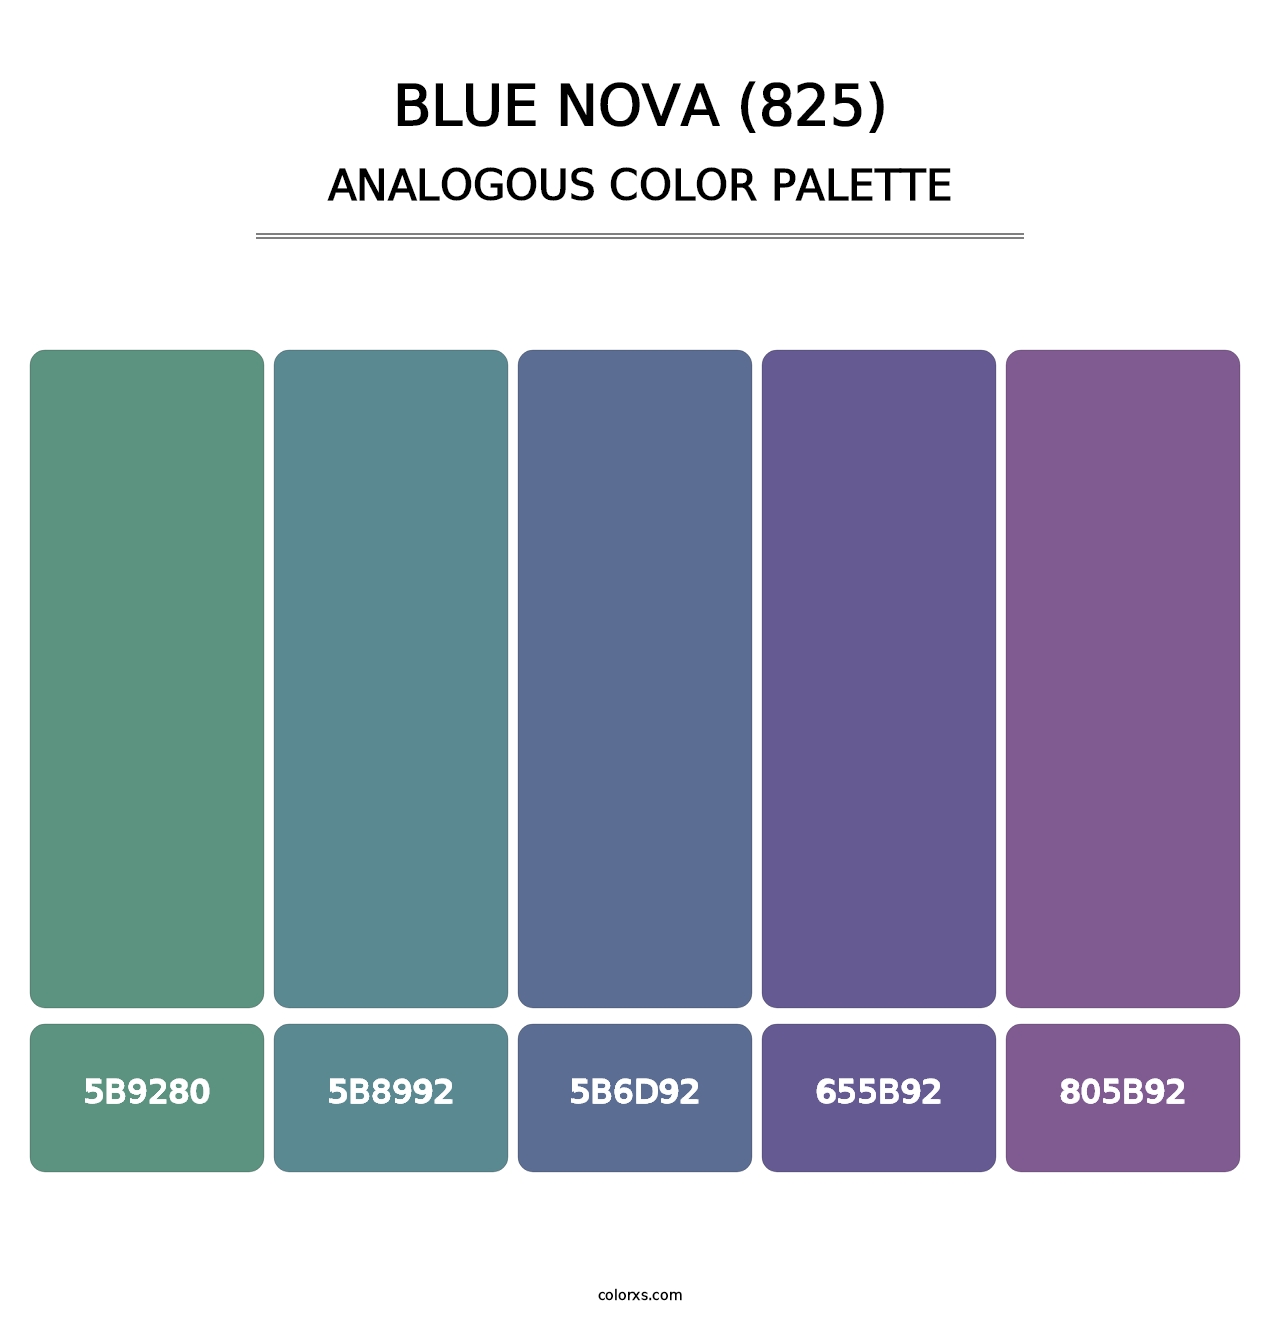 Blue Nova (825) - Analogous Color Palette